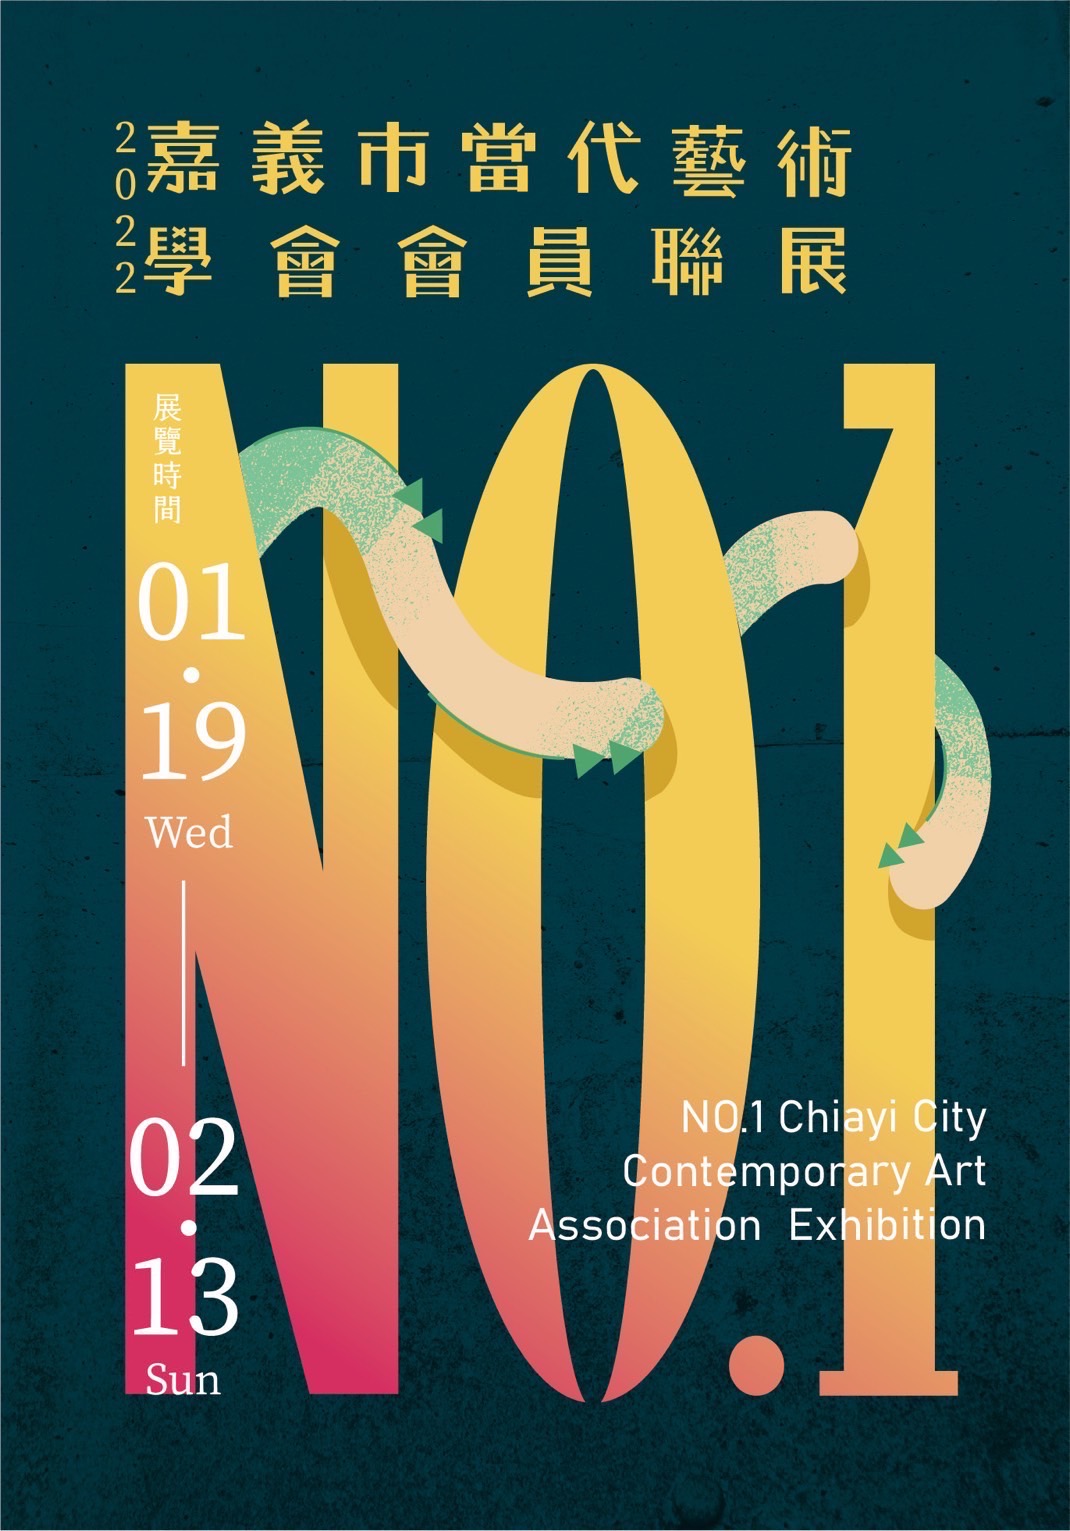 โปสเตอร์นิทรรศการ NO.1 ของสมาชิกสมาคมศิลปะร่วมสมัยเมืองเจียอี้ (No.1 Chiayi City Contemporary Art Association Exhibition) ภาพจาก／สมาคมศิลปะร่วมสมัยเมืองเจียอี้ (嘉義市當代藝術學會)